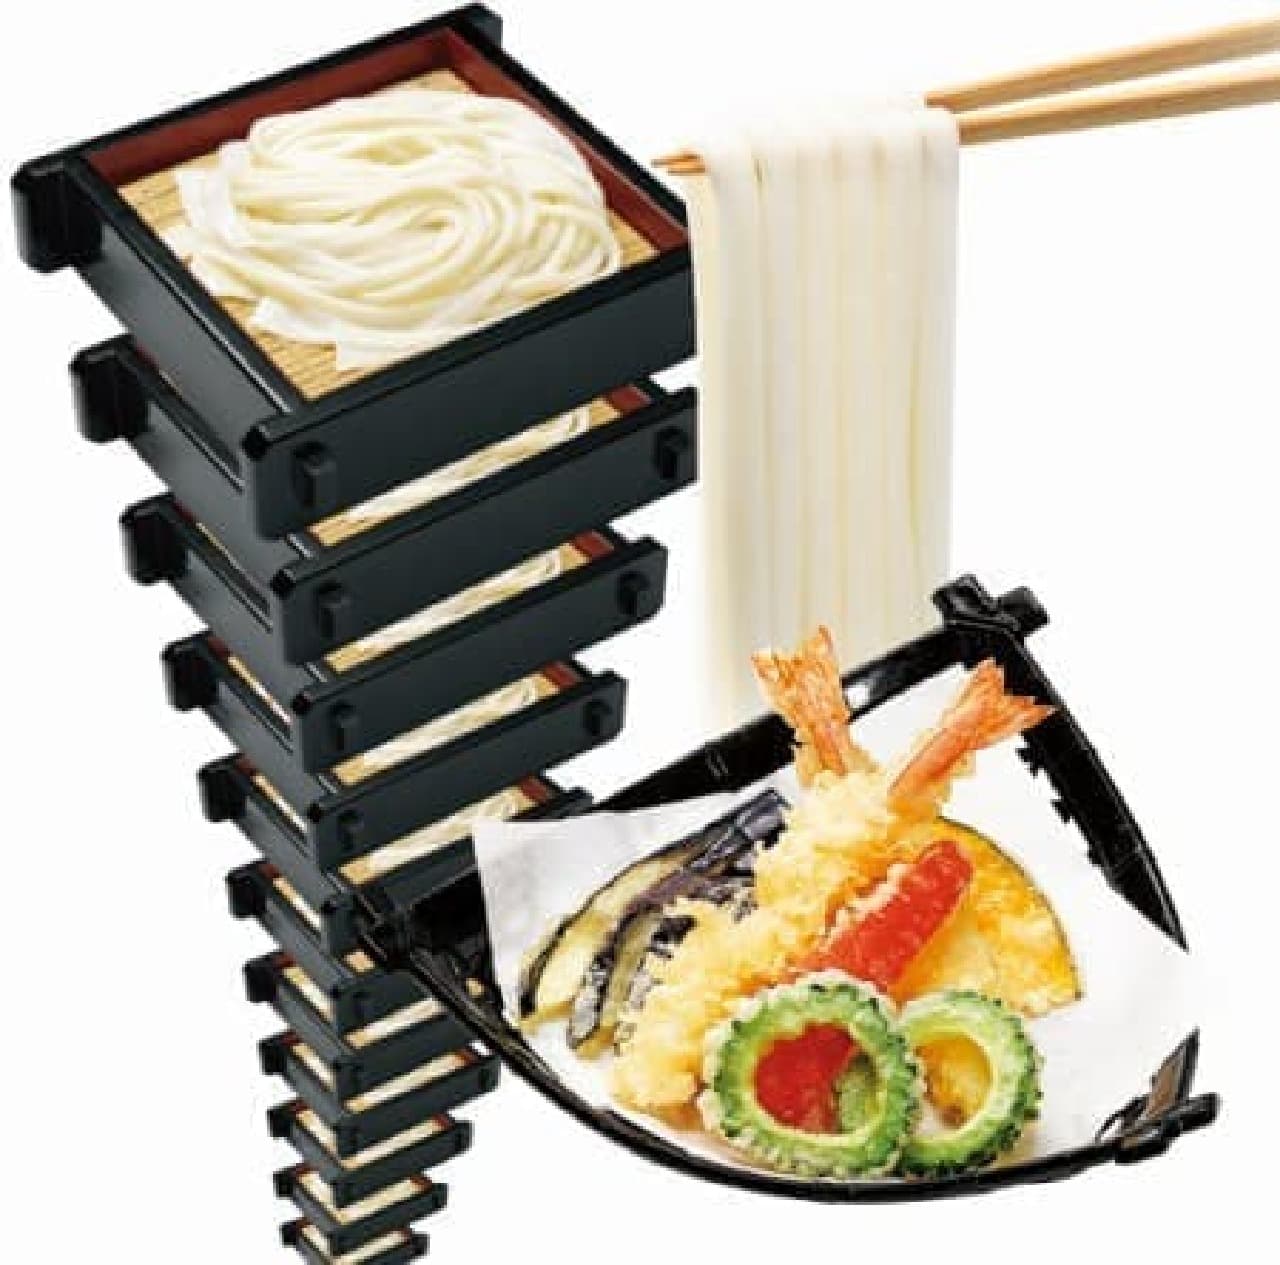 I like udon, get together ~ !!